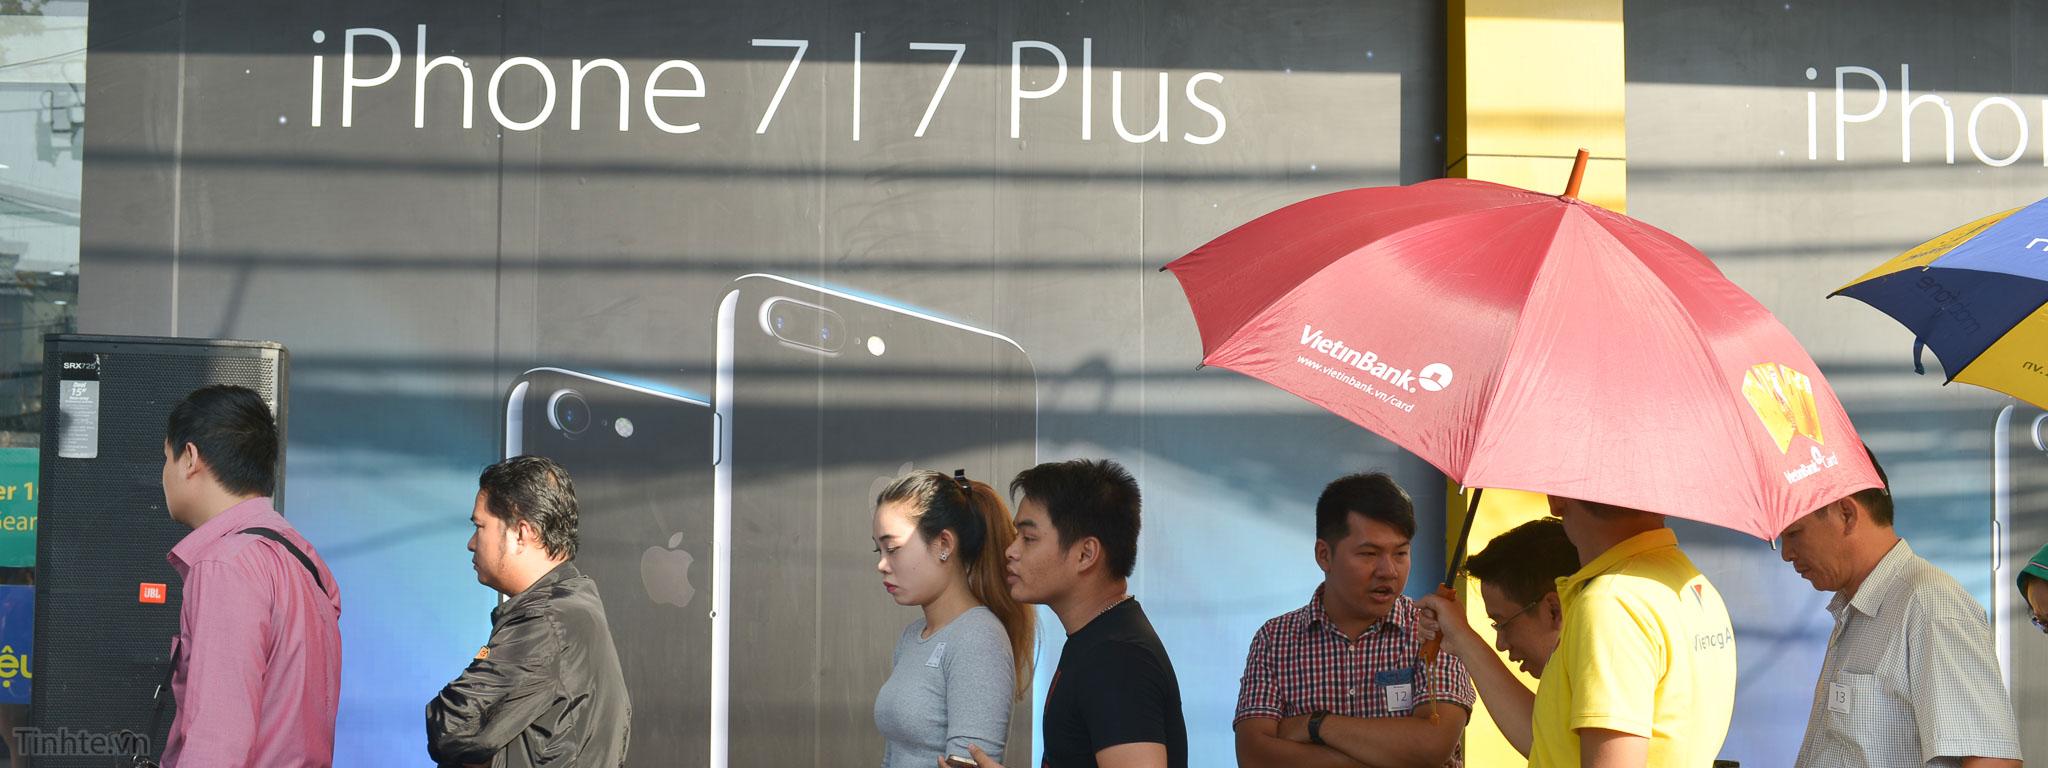 [Hình ảnh] Mở bán iPhone chính hãng ở Viễn Thông A: iPhone 7 Plus đặt hàng gấp 3 lần iPhone 7